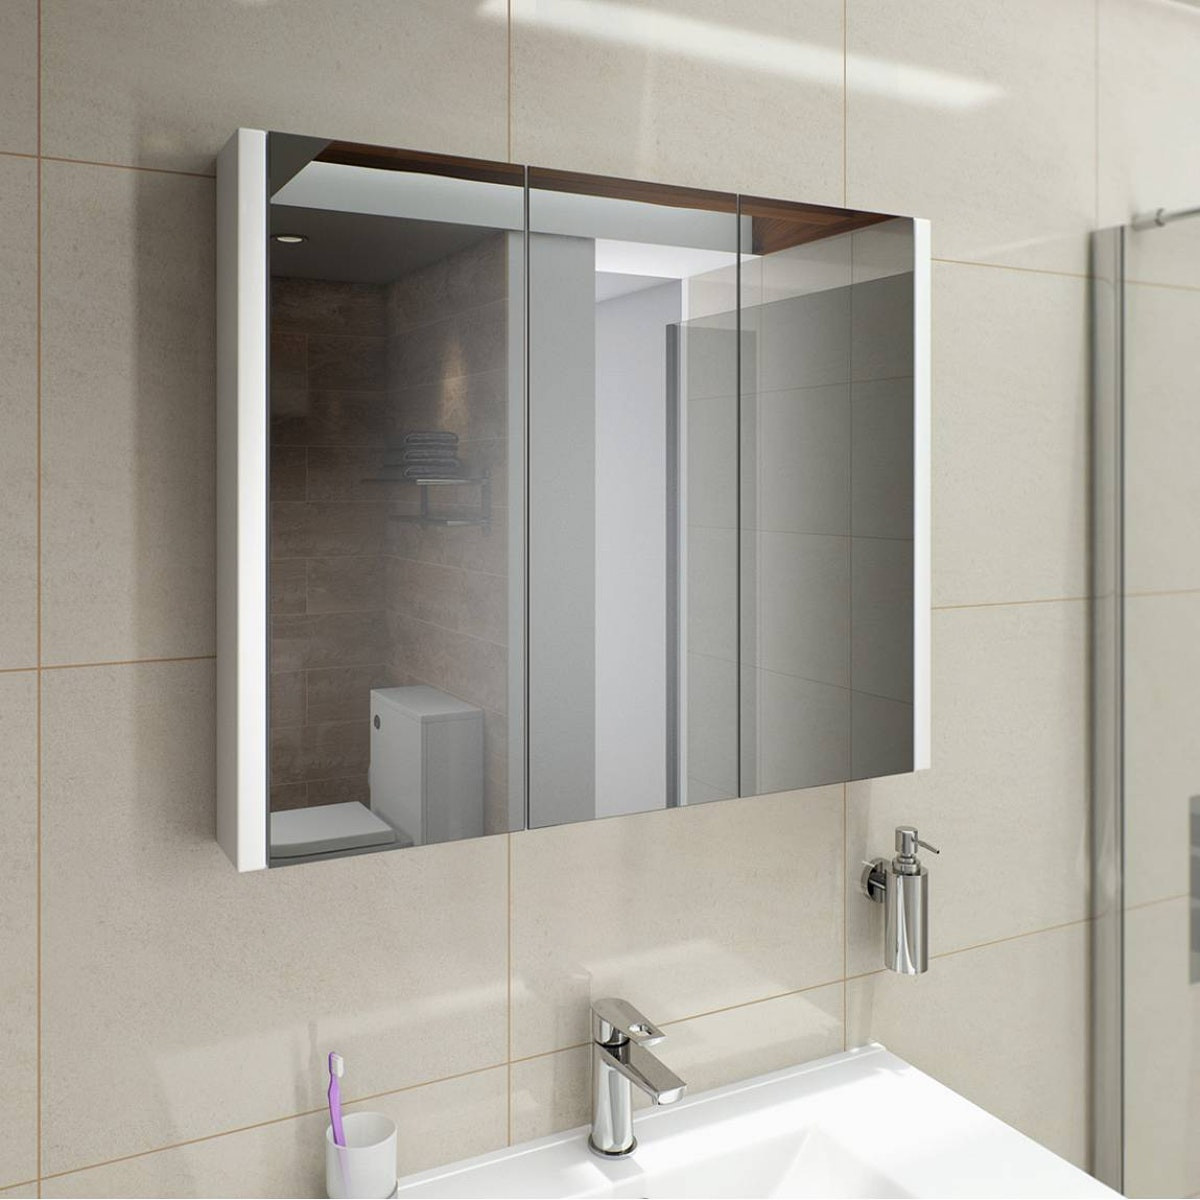 Mirror Bathroom Cabinet
 Odessa White 3 Door Bathroom Mirror Cabinet